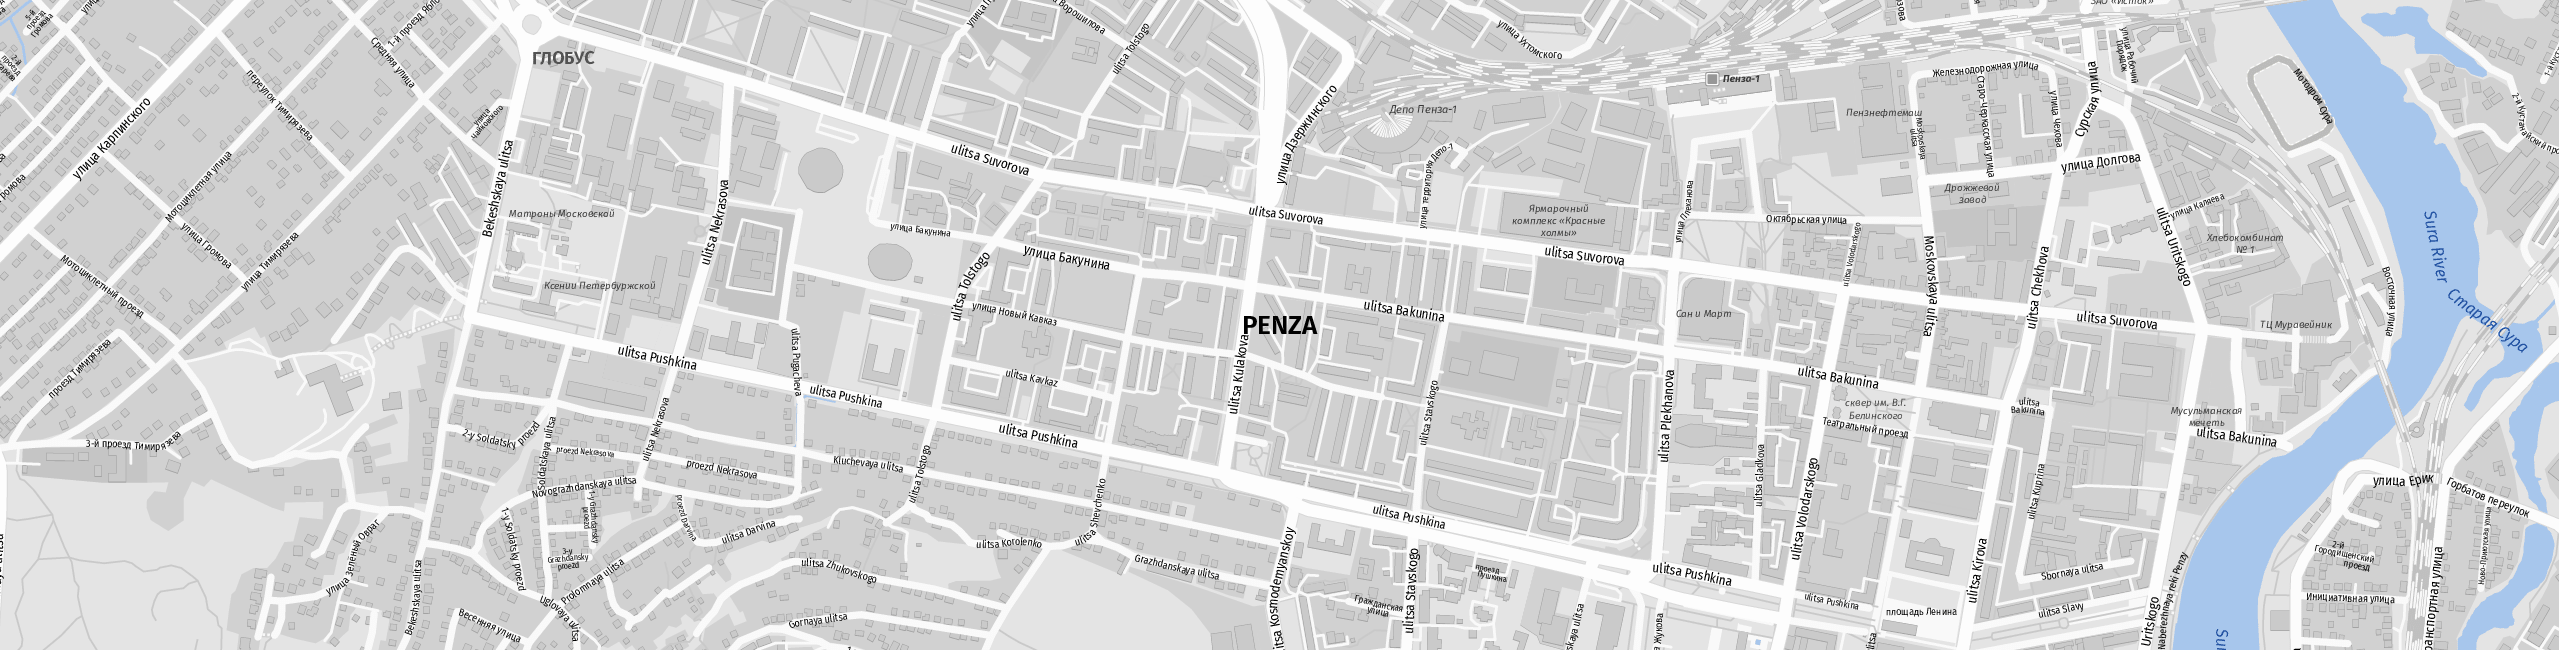 Stadtplan Penza zum Downloaden.